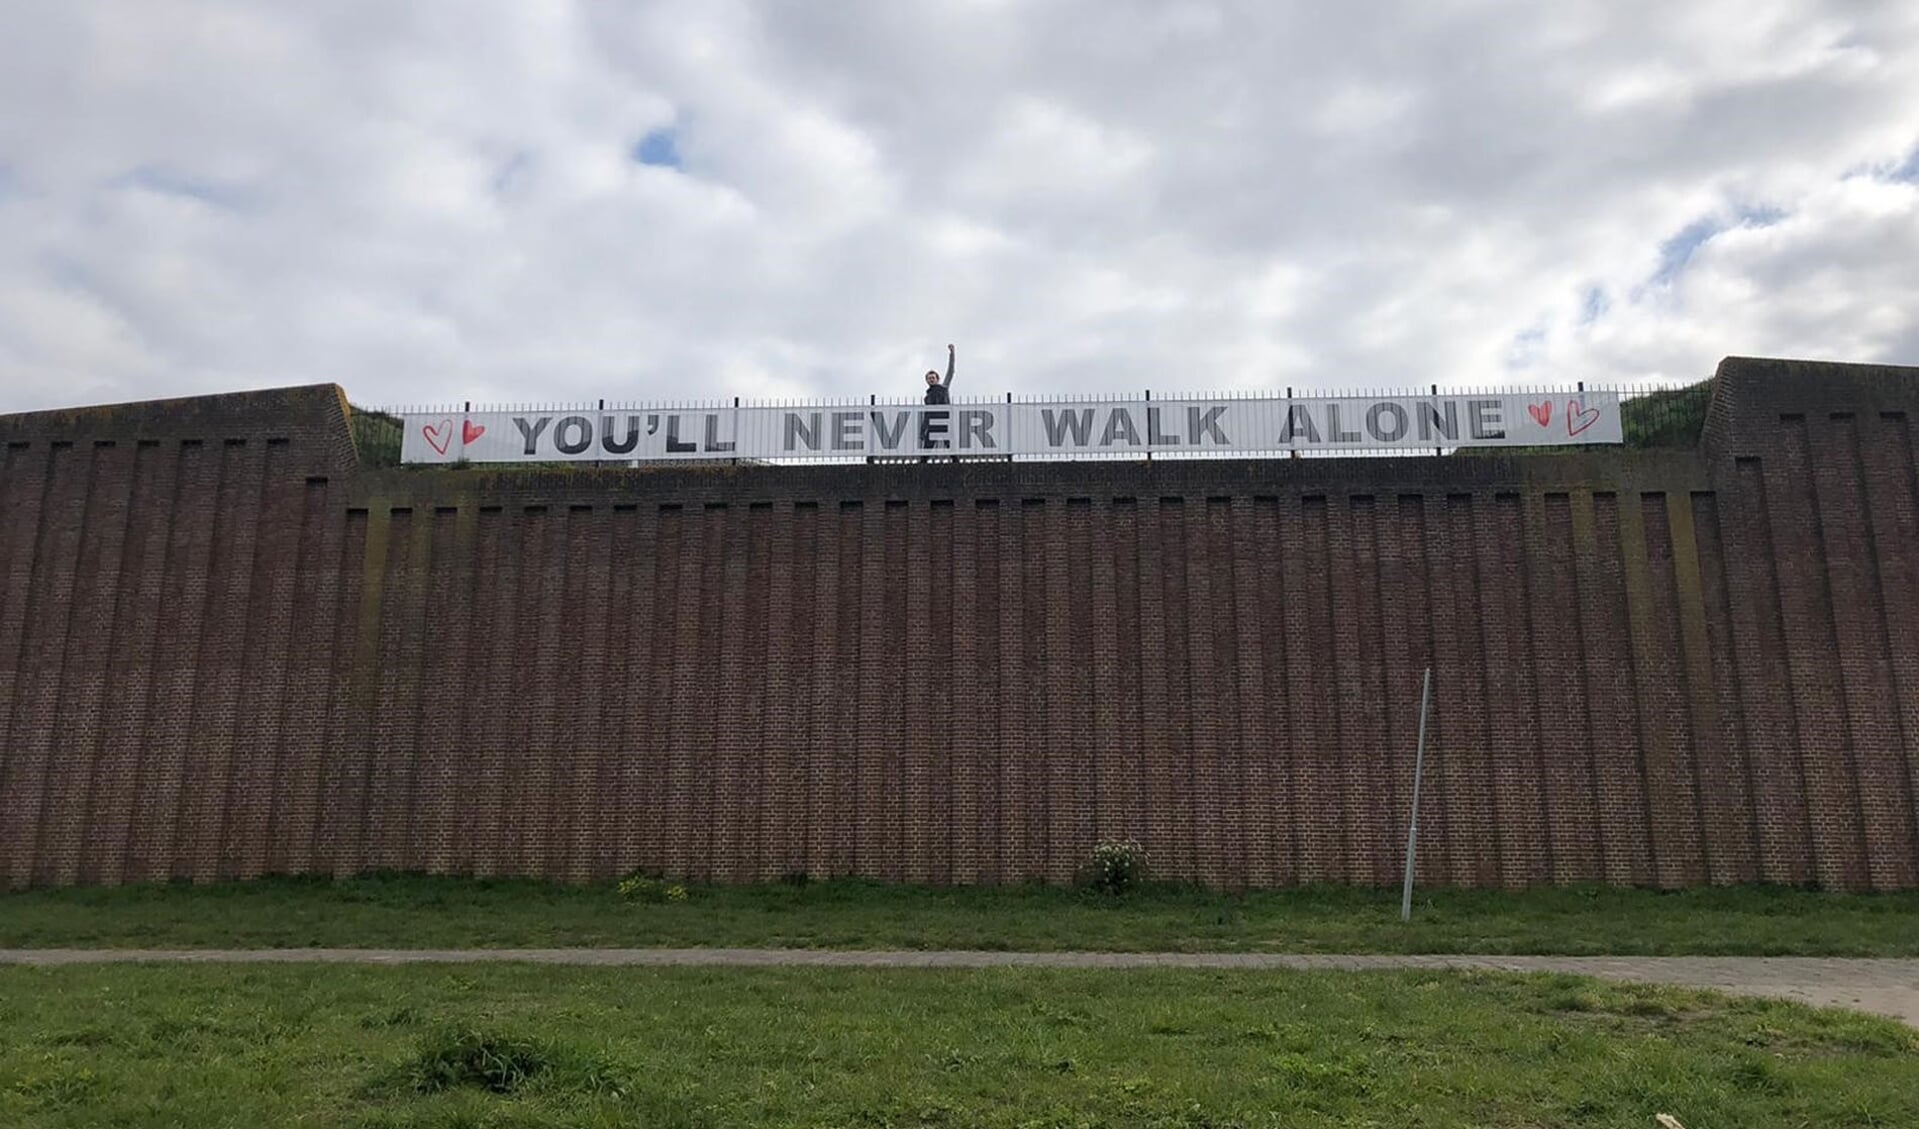 ‘You’ll never walk alone’ staat op het twintigmeter lange spandoek dat hangt bij de ingang van de Citadel in ’s-Hertogenbosch.